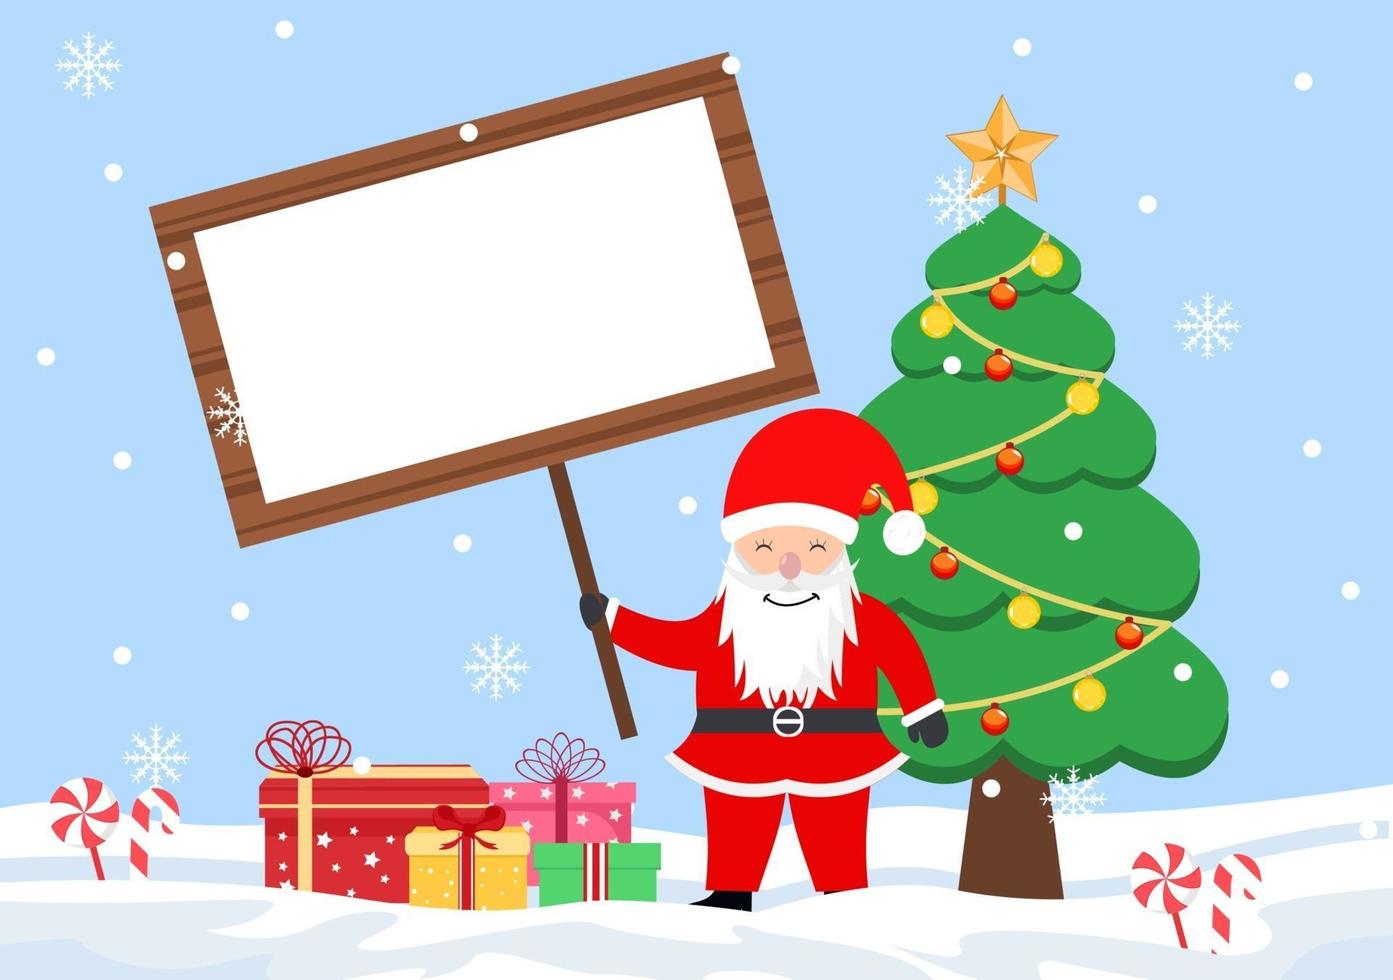 vrolijk kerstfeest met de kerstman of sneeuwpop cartoon naar het uithangbord vector